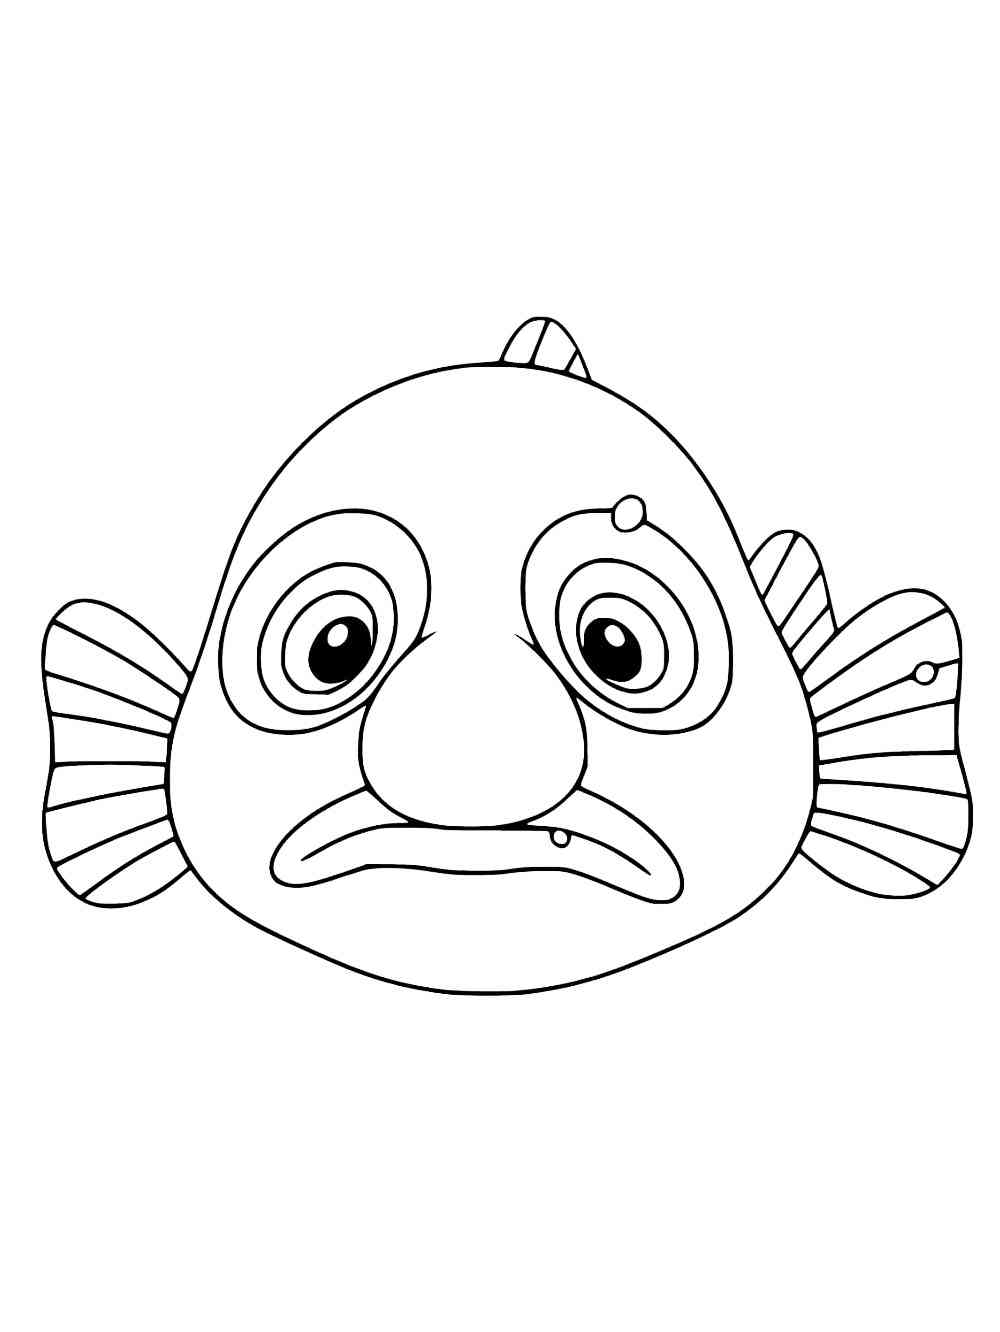 Cartoon Blobfish coloring page